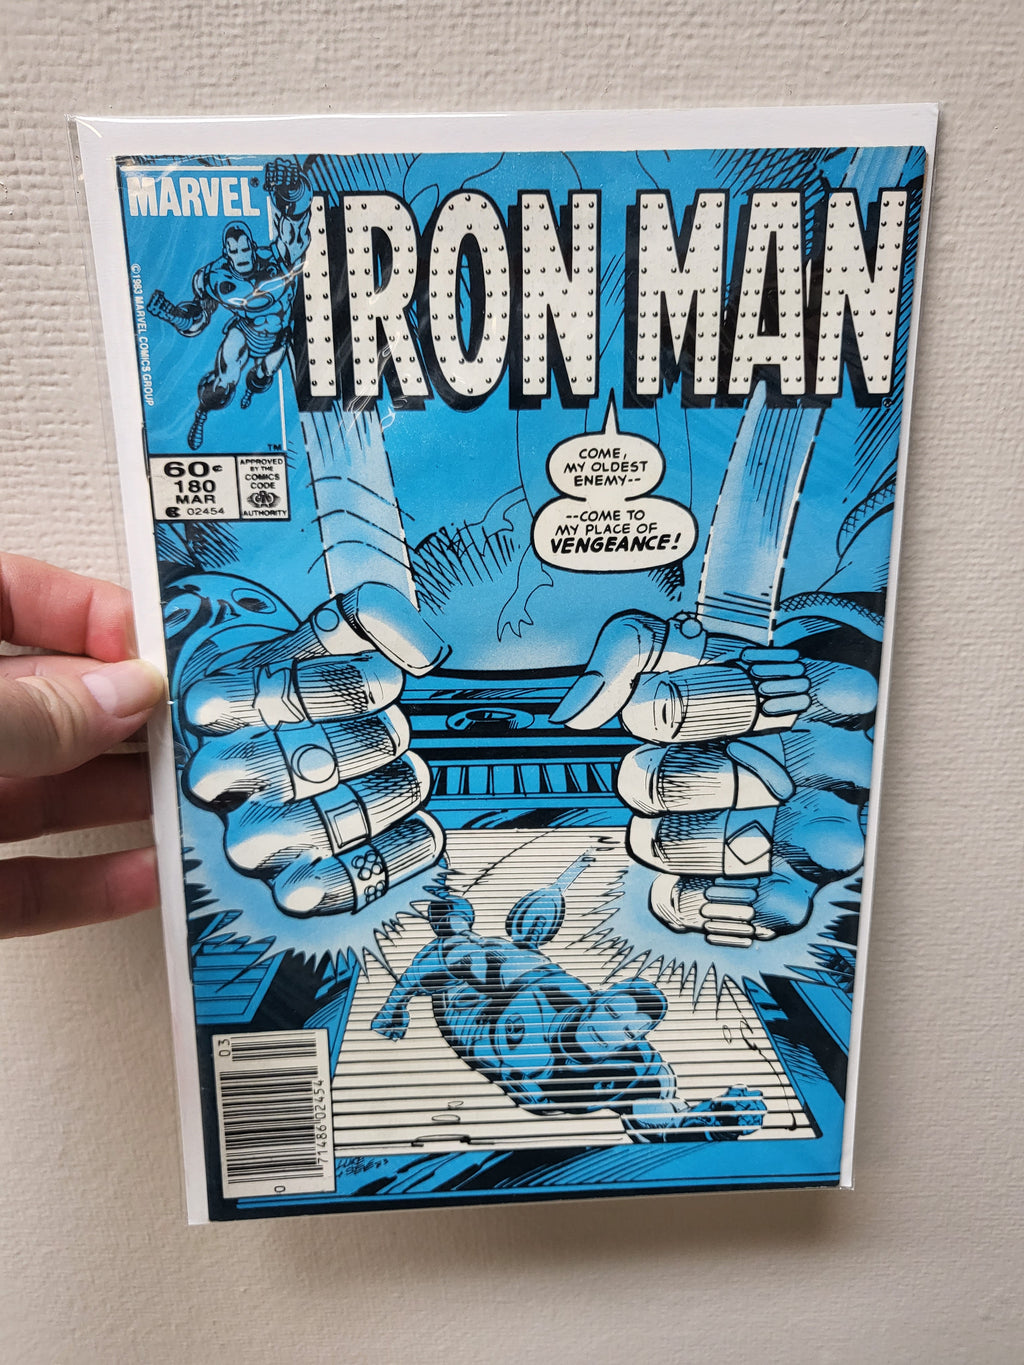 Iron Man #180 (1984) Newsstand Edition - Mandarin & Radioactive Man - Marvel Comics